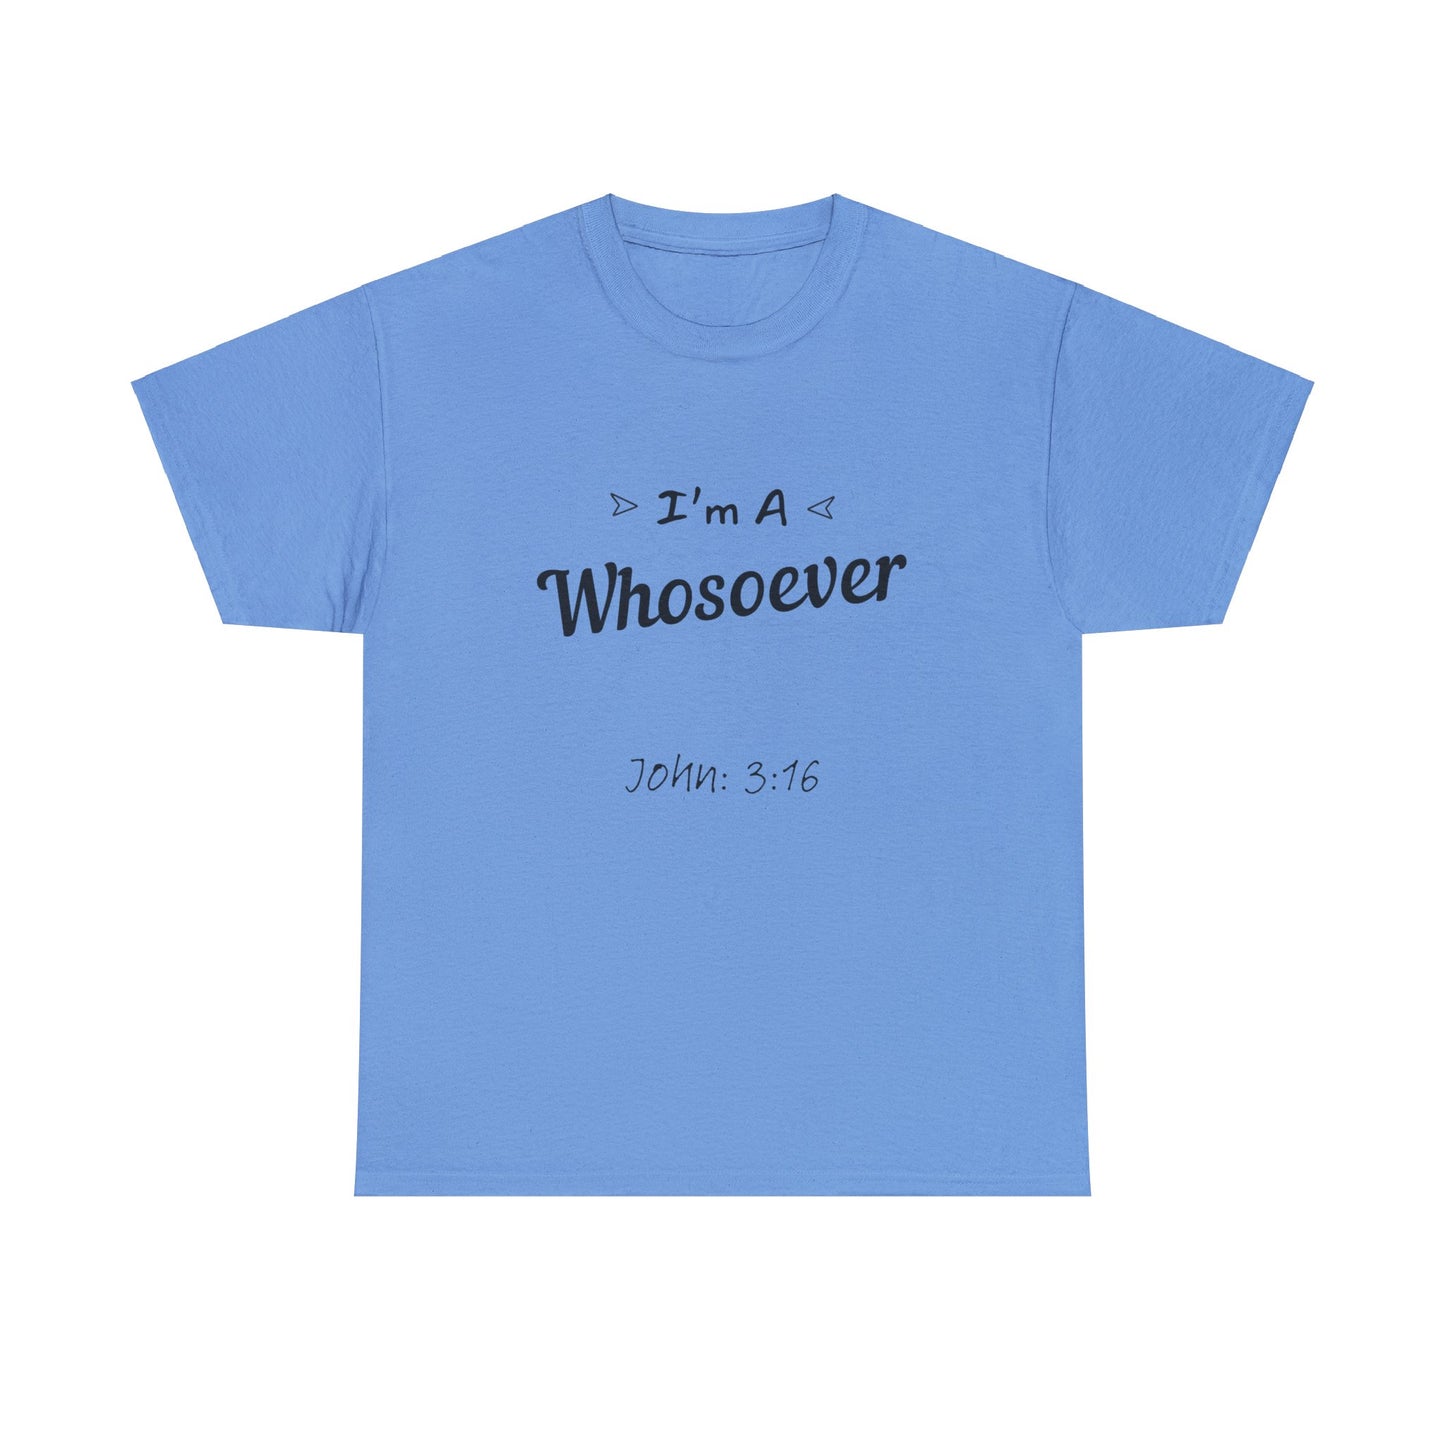 "Everlasting life promise T-shirt inspired by John 3:16 for Christians."